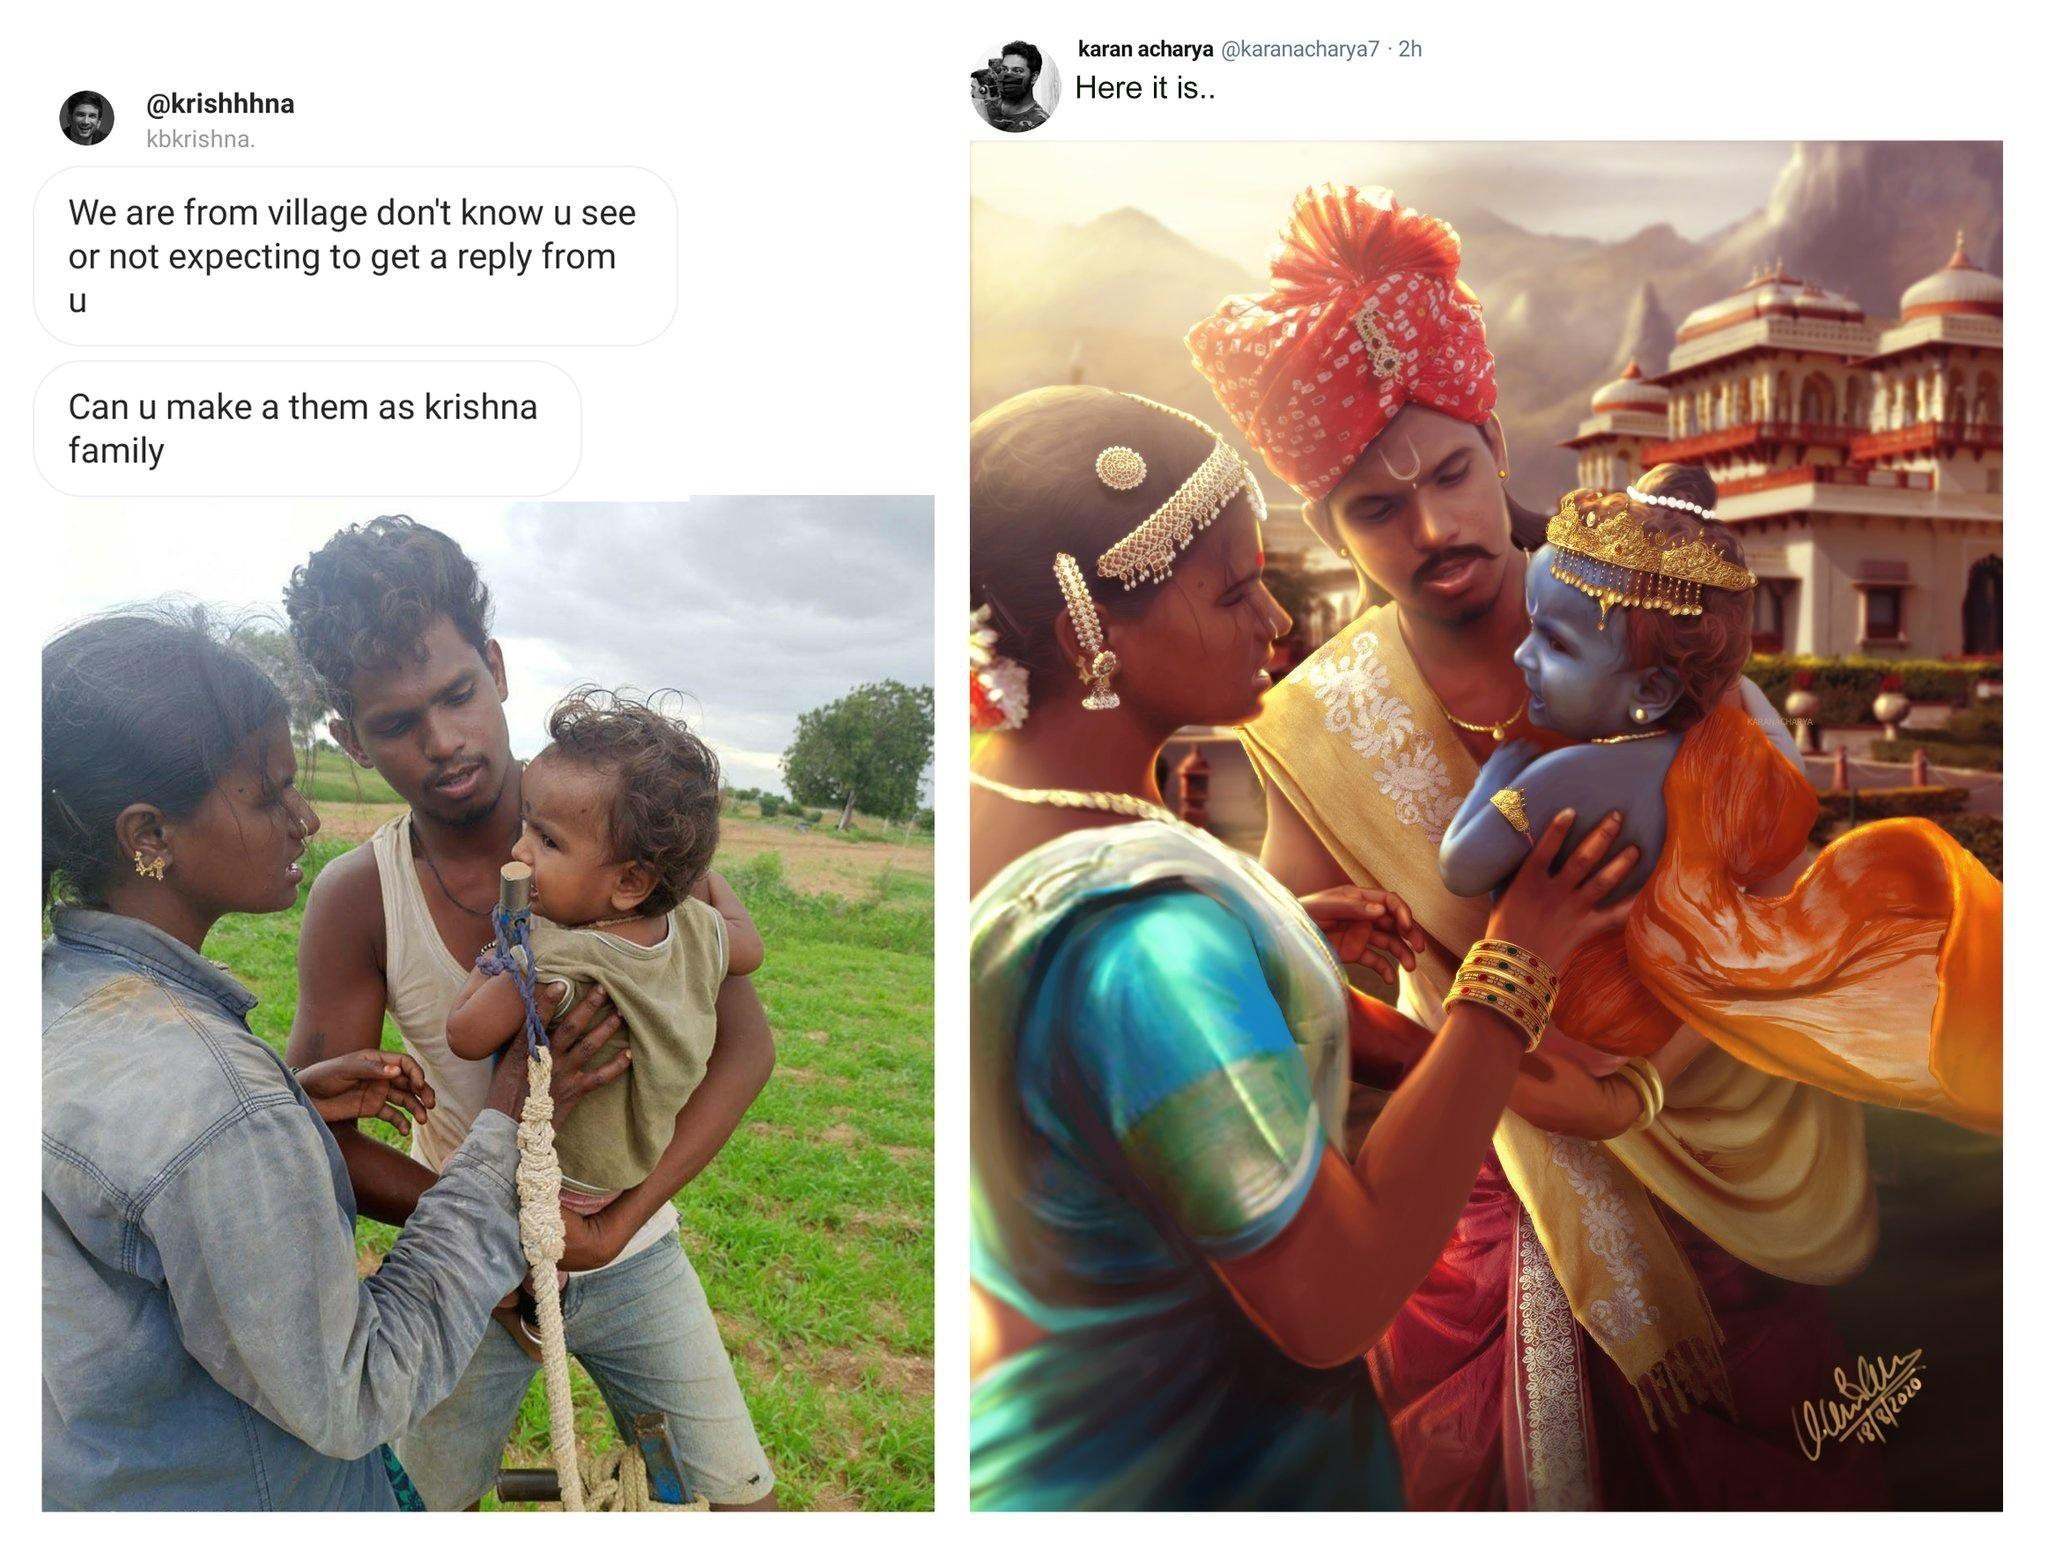 Photoshop master Krishna level! - Photoshop, Photoshop master, Krishna, India, Family, Children, Translation